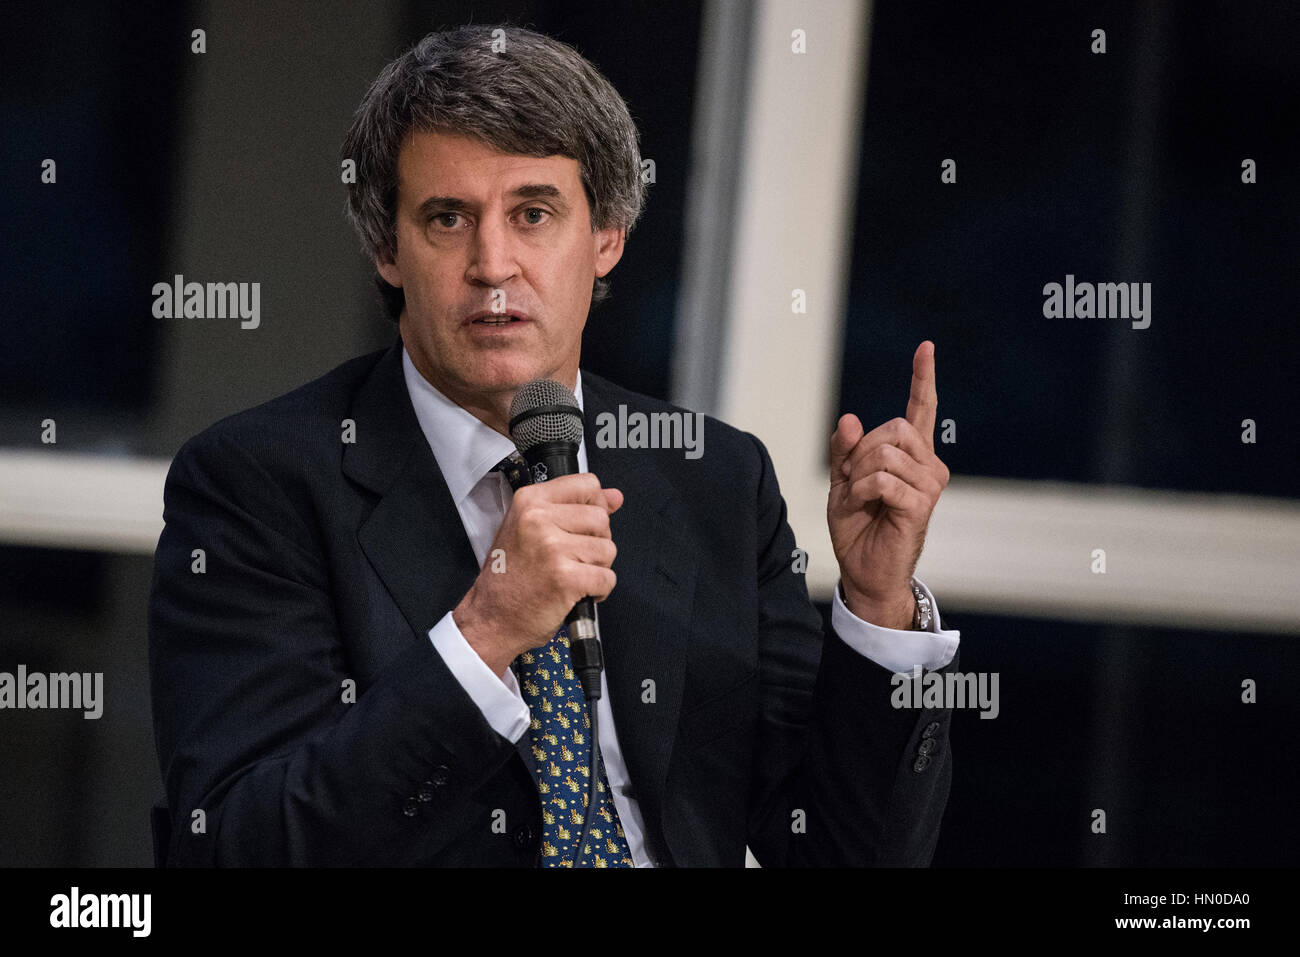 Olivos, Argentinien - 6. Mai 2016: Minister der Wirtschaft Alfonso Prat-Gay während einer Pressekonferenz für die ausländische Presse bei den Präsidentschaftswahlen residenc Stockfoto